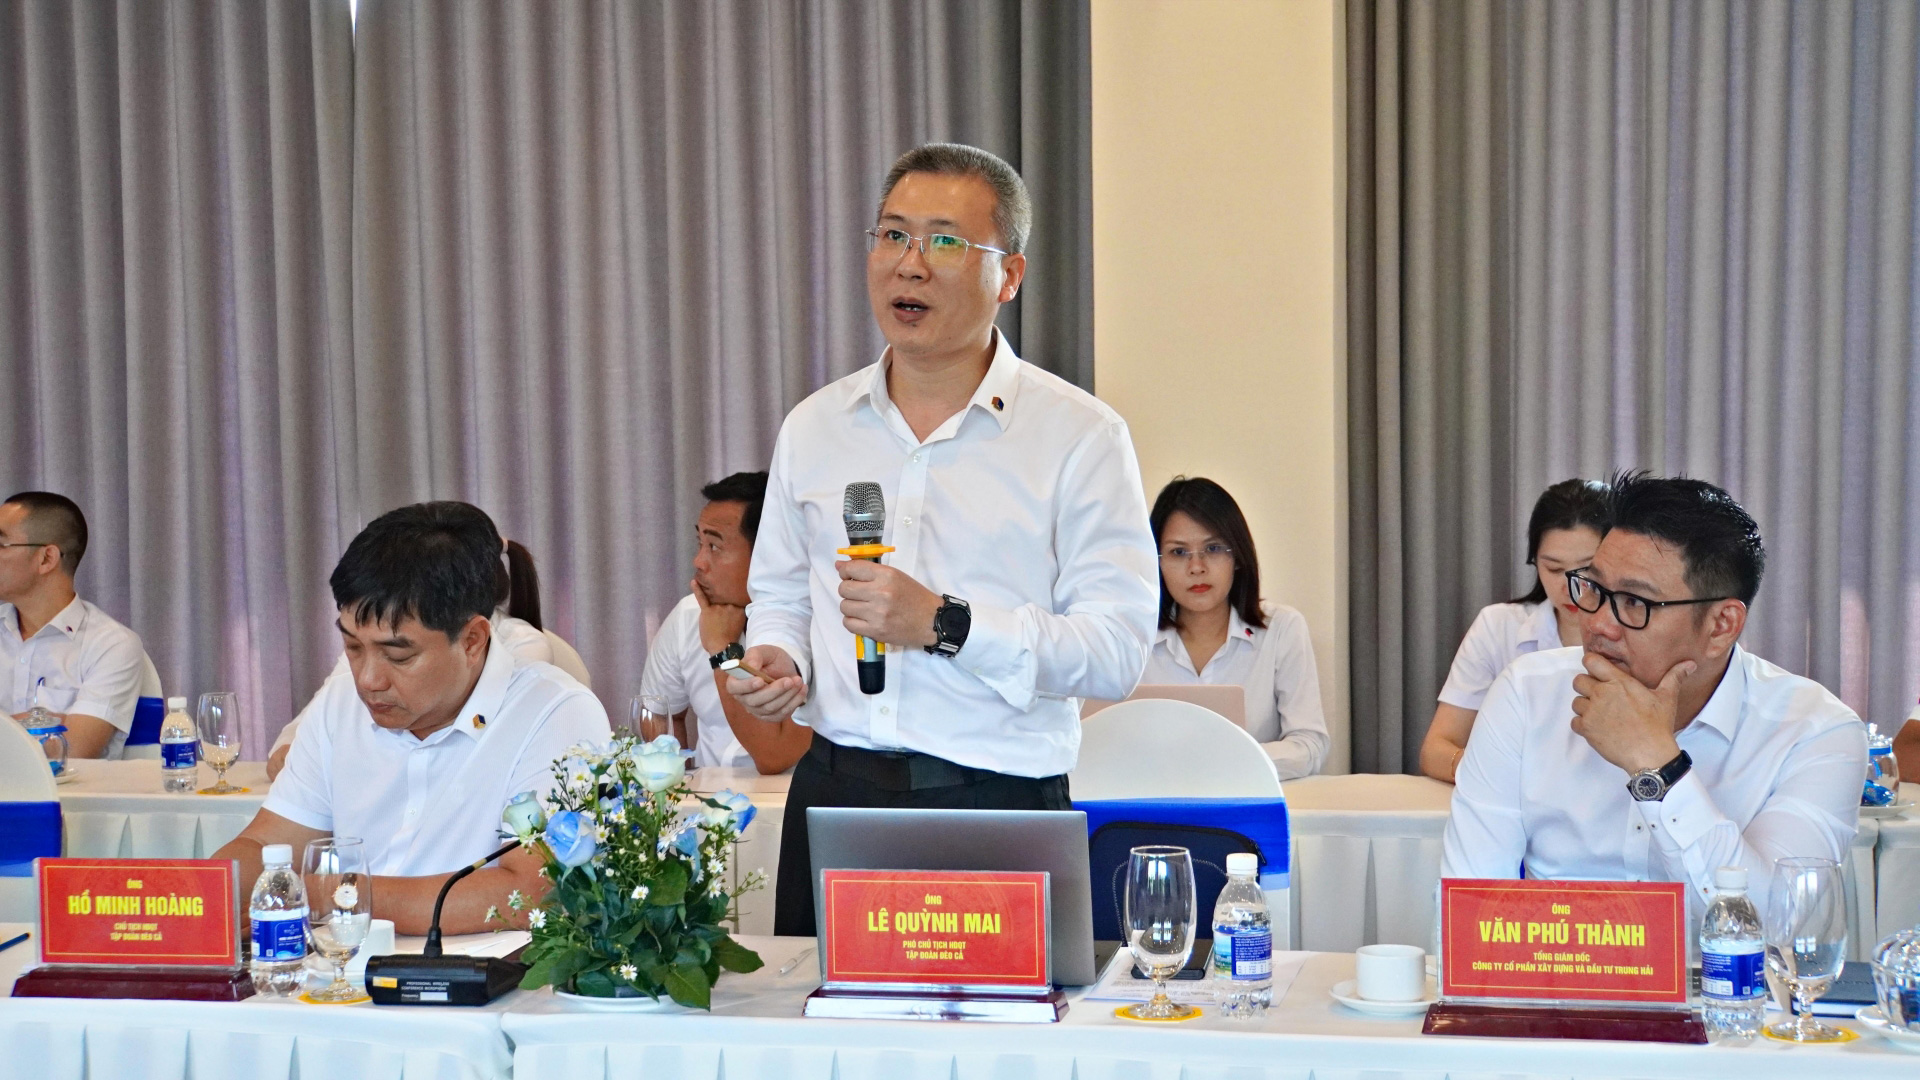 Ông Lưu Huỳnh Mai, Phó Chủ tịch HĐQT Công ty cổ phần Tập đoàn Đèo Cả phát biểu